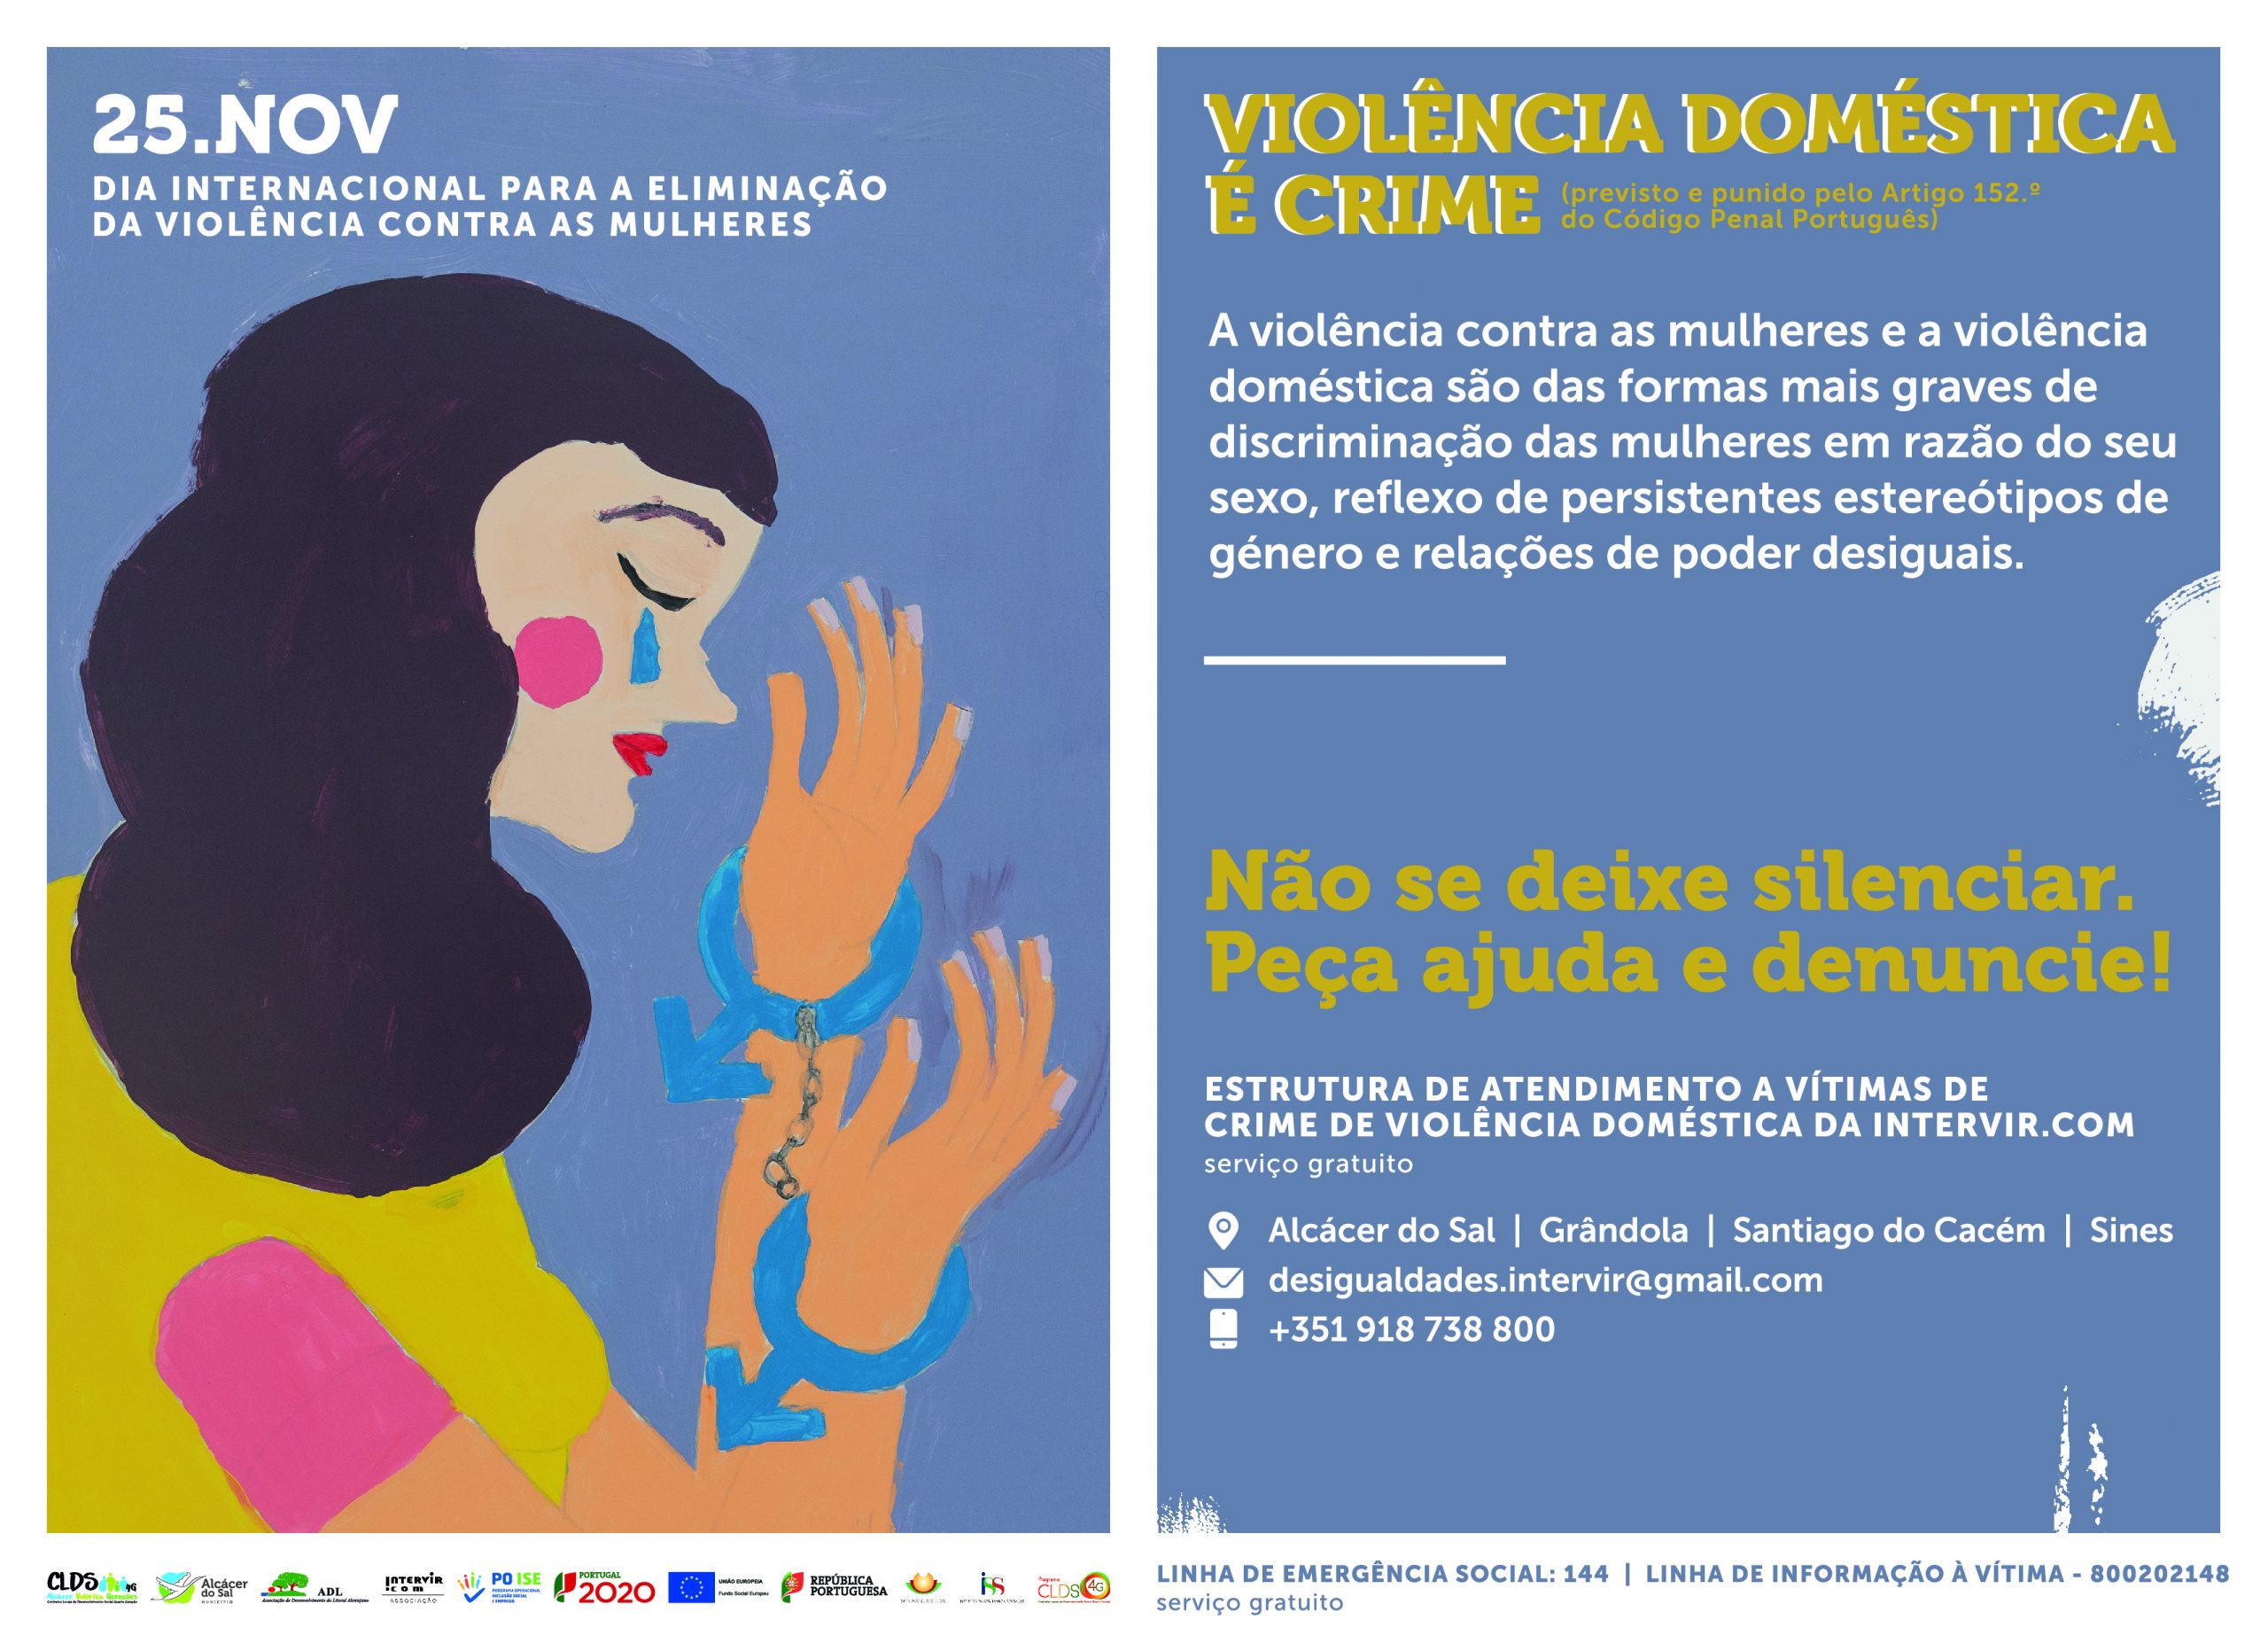 Dia Internacional para a Eliminação da Violência contra as Mulheres